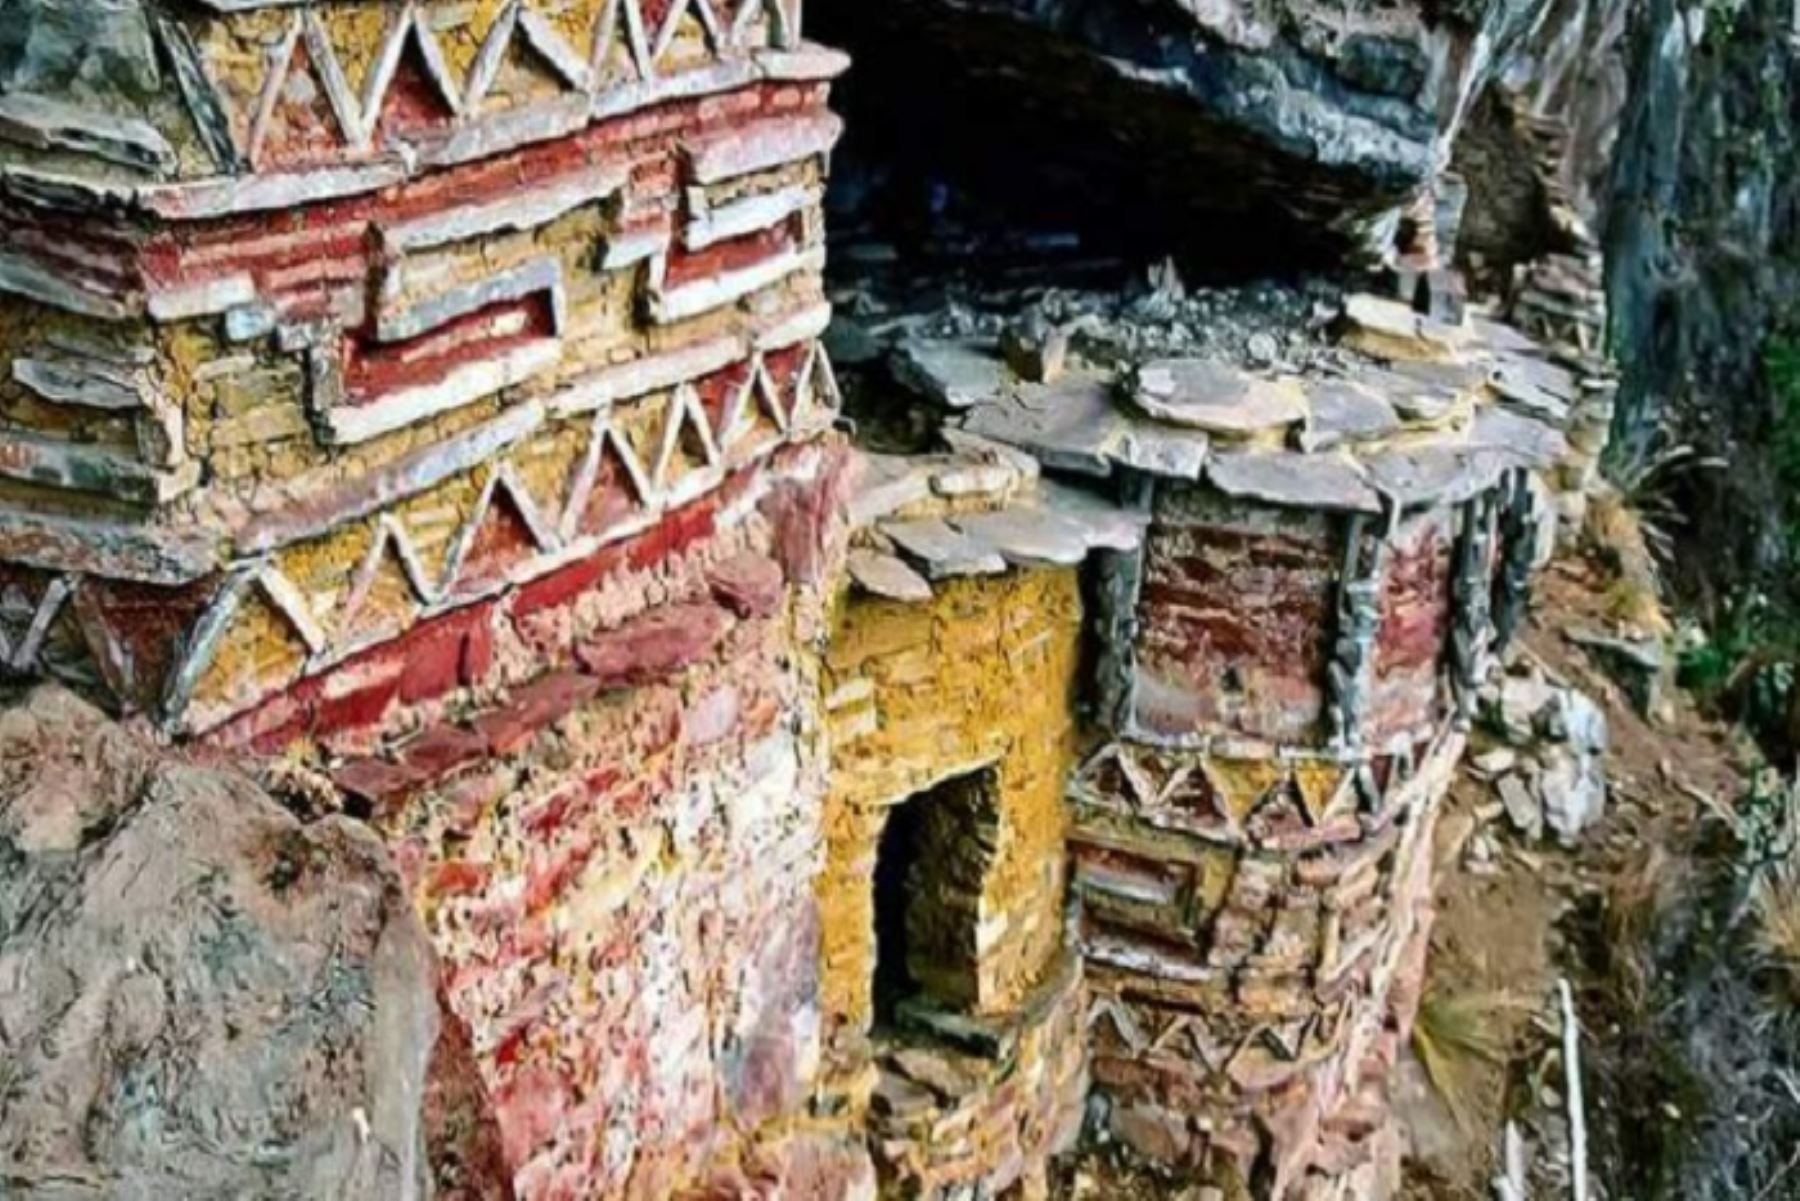 Sitio arqueológico Los Pinchudos fue declarado patrimonio cultural de la Nación mediante Resolución Viceministerial N° 000156-2022-VMPCIC/MC del 19 de julio de 2022.